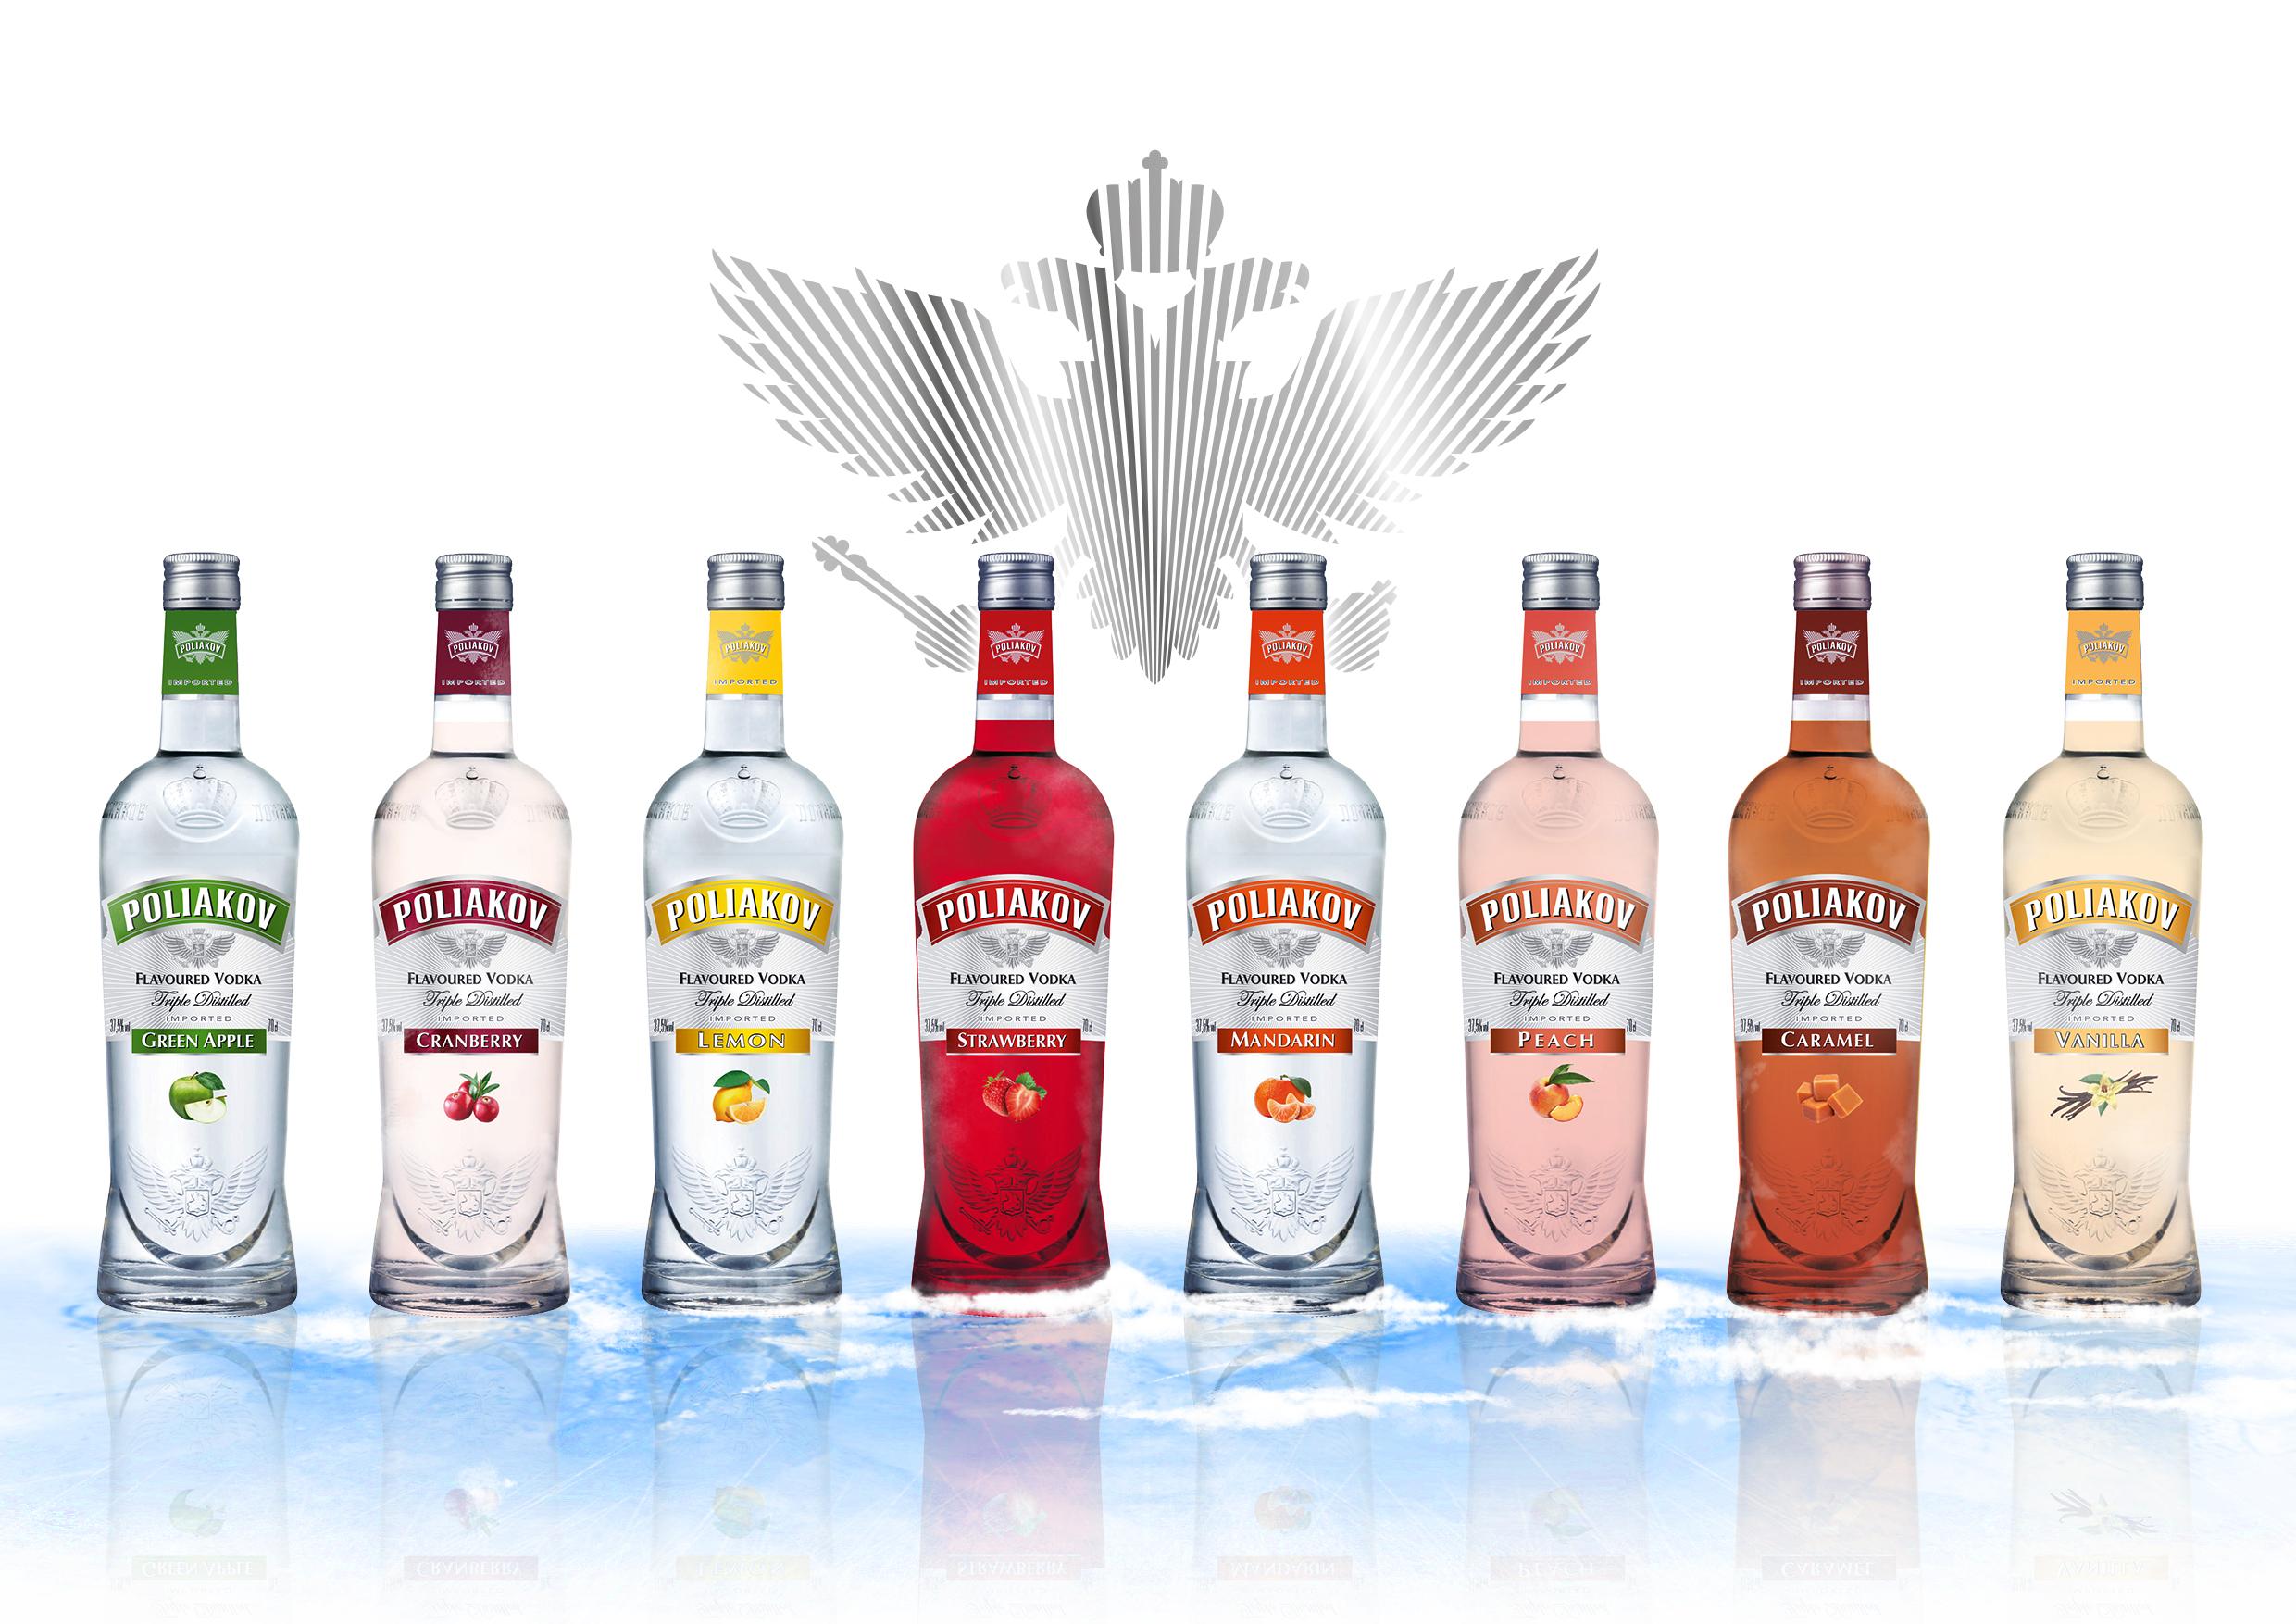 Review: 8 Poliakov Flavored Vodkas